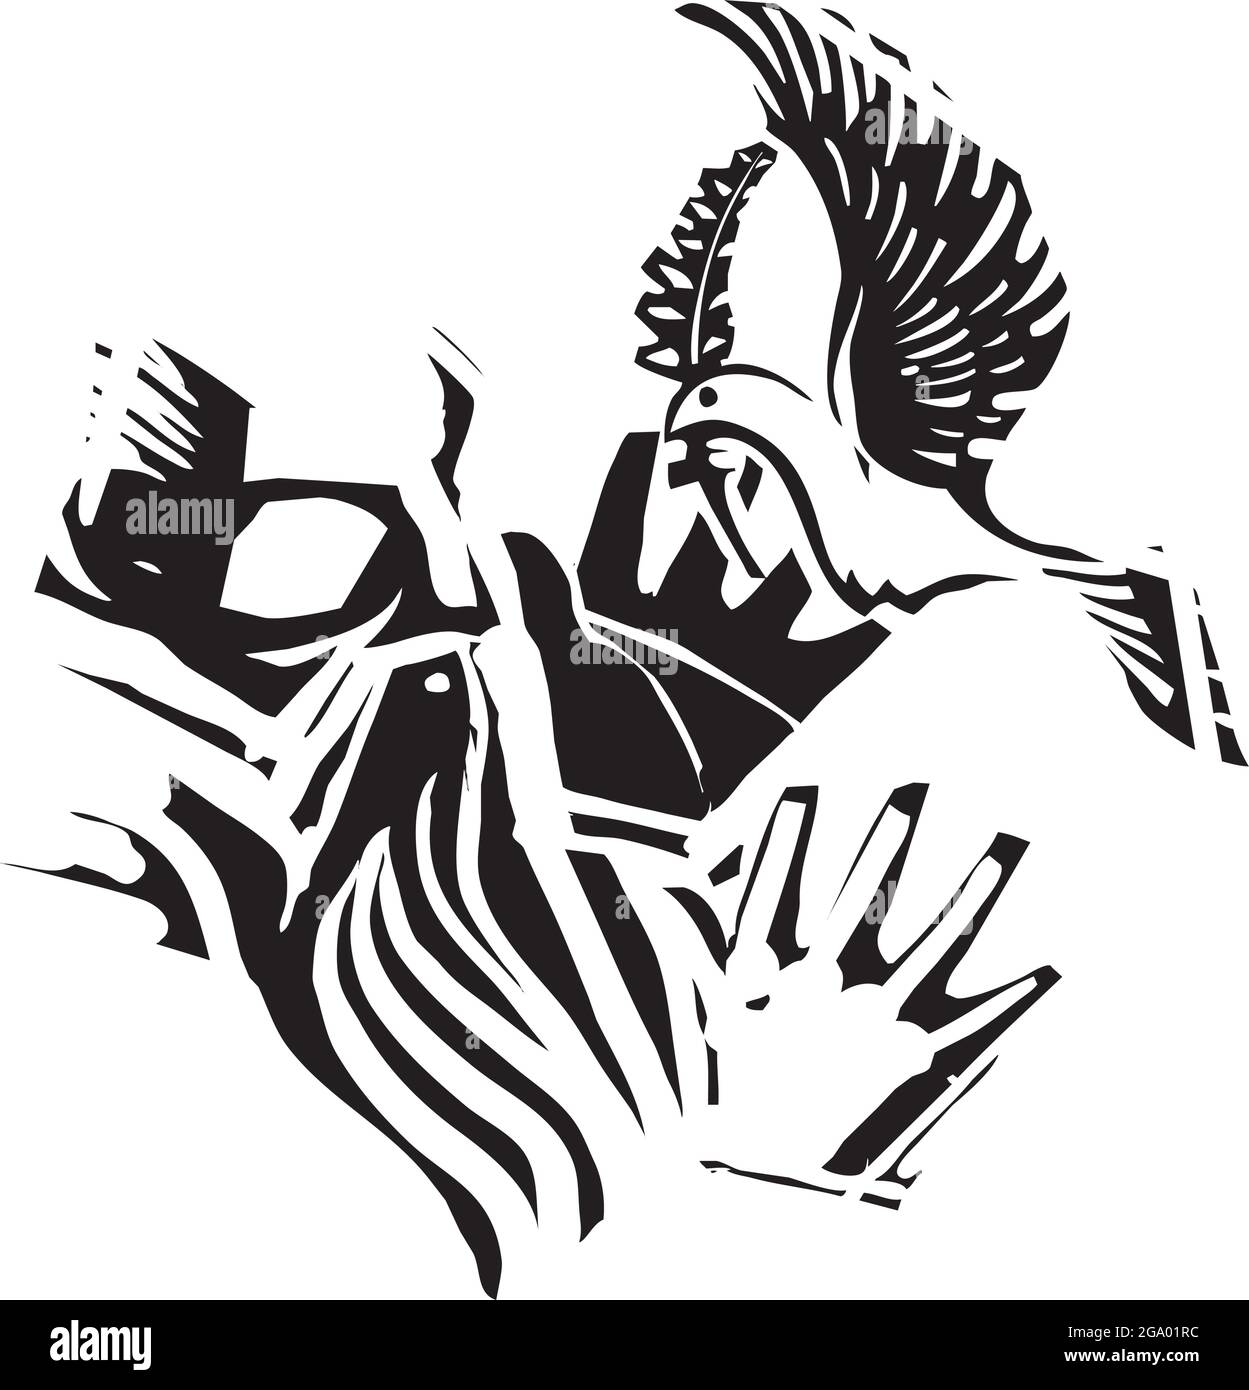 Paloma de paz de estilo expresionista tallados en madera volando con una rama de olivo volando en las manos bíblicas de noé. Ilustración del Vector